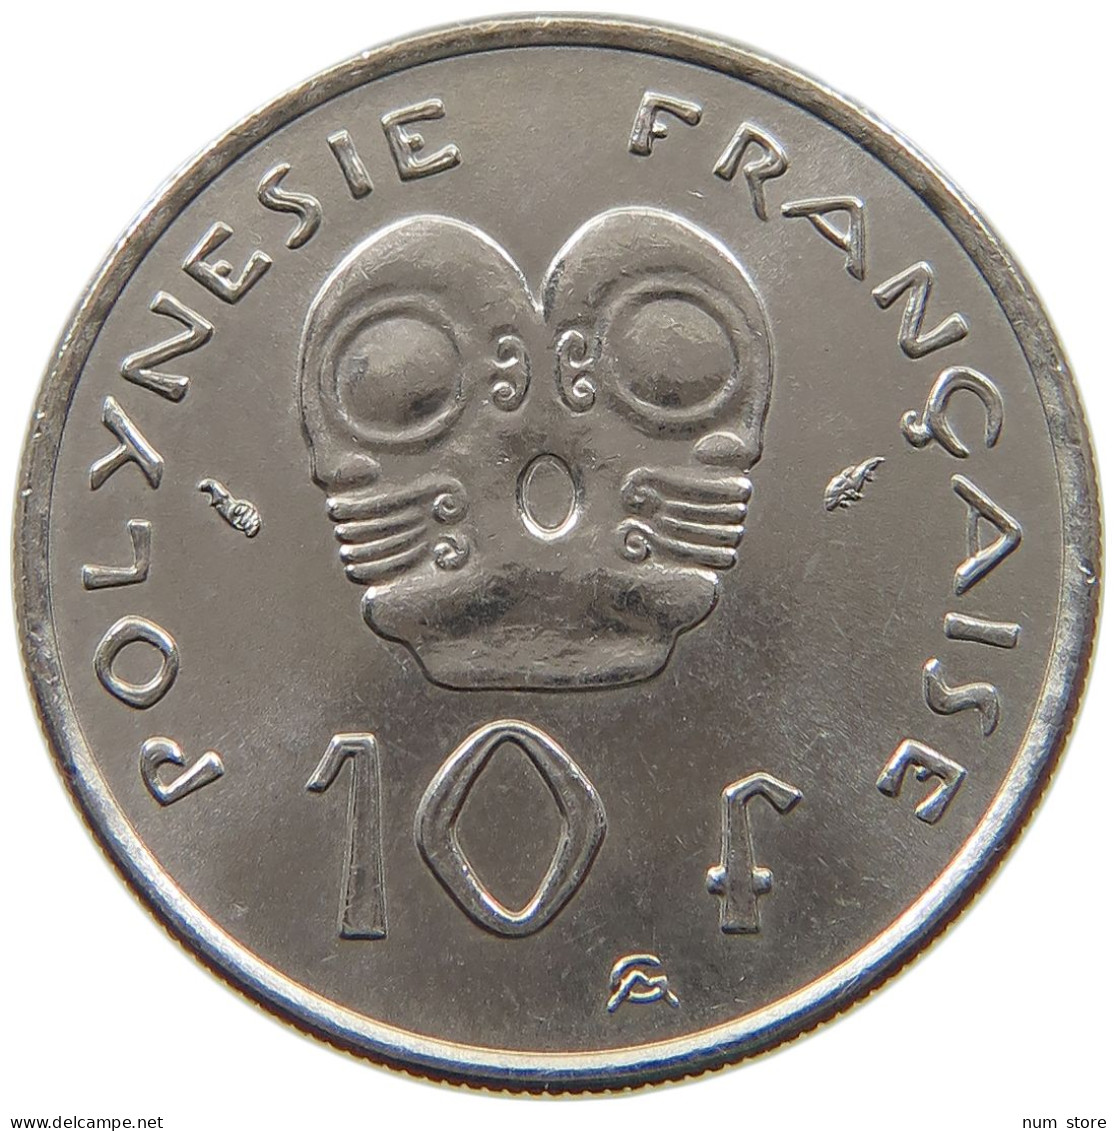 POLYNESIA 20 FRANCS 1979  #a031 0089 - French Polynesia